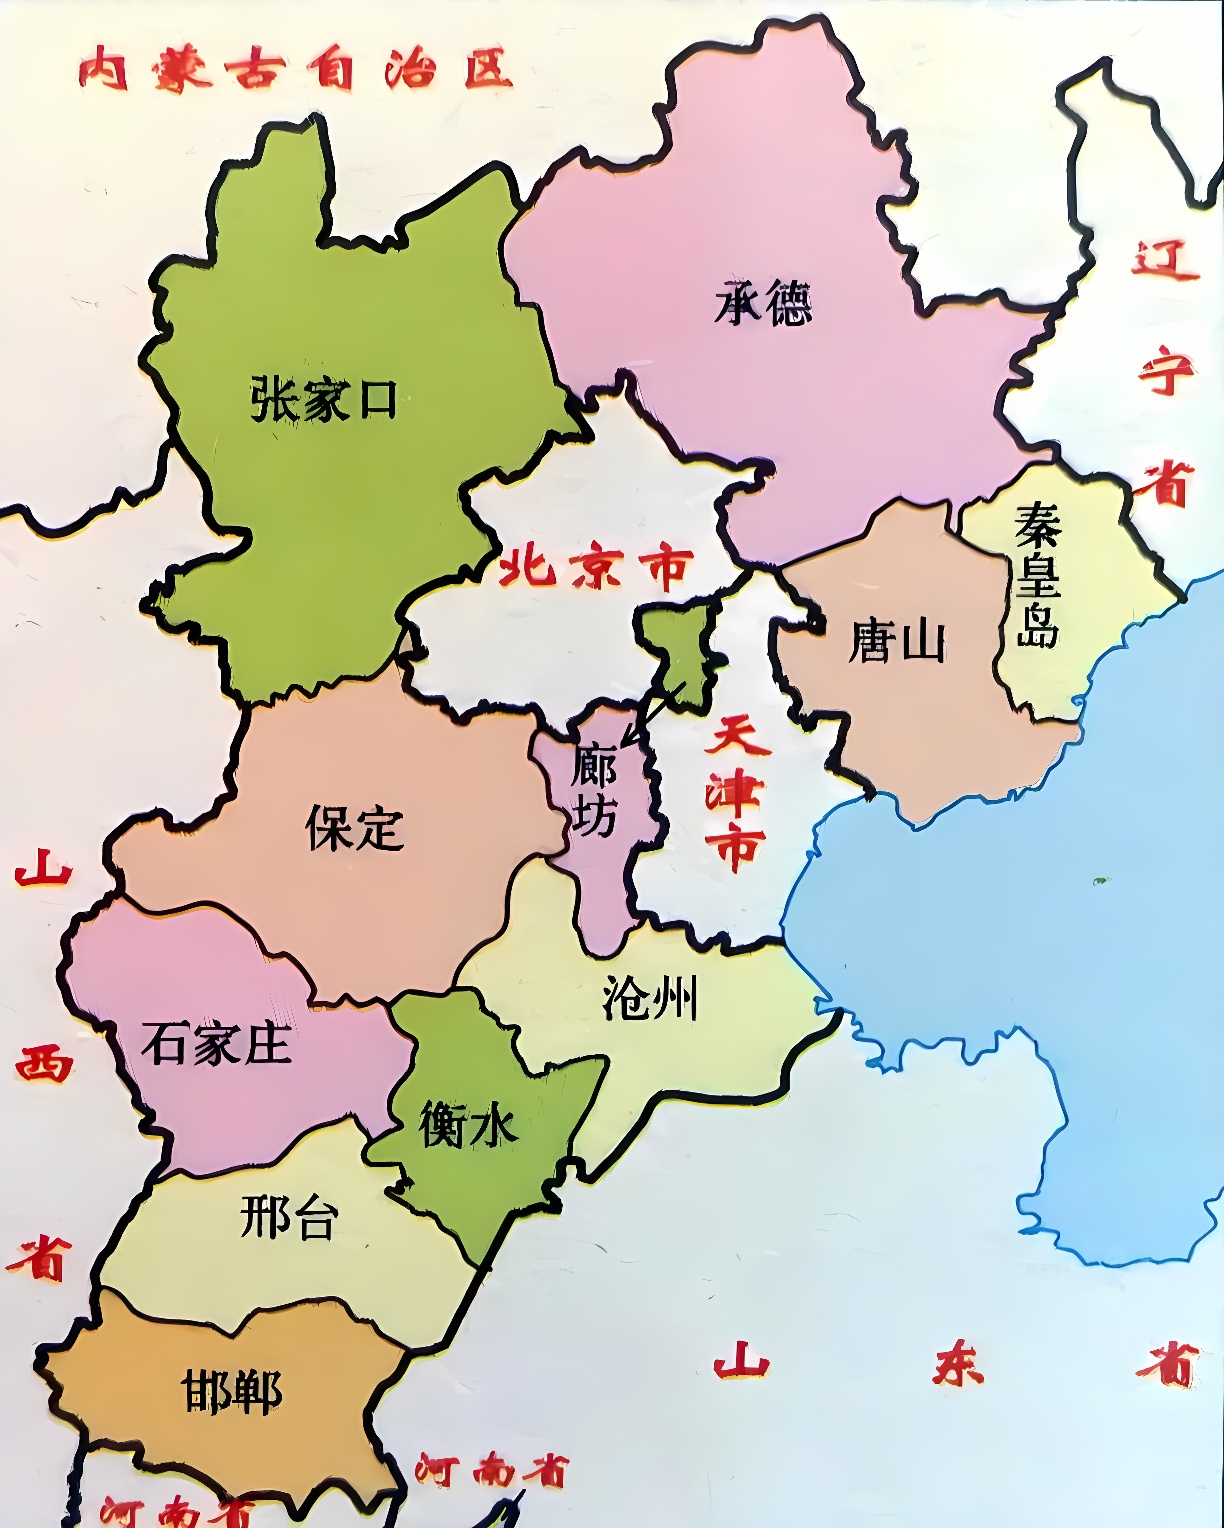 这是一张中国地图，展示了不同的省份，各省用不同颜色区分，上面有省份的中文名称。